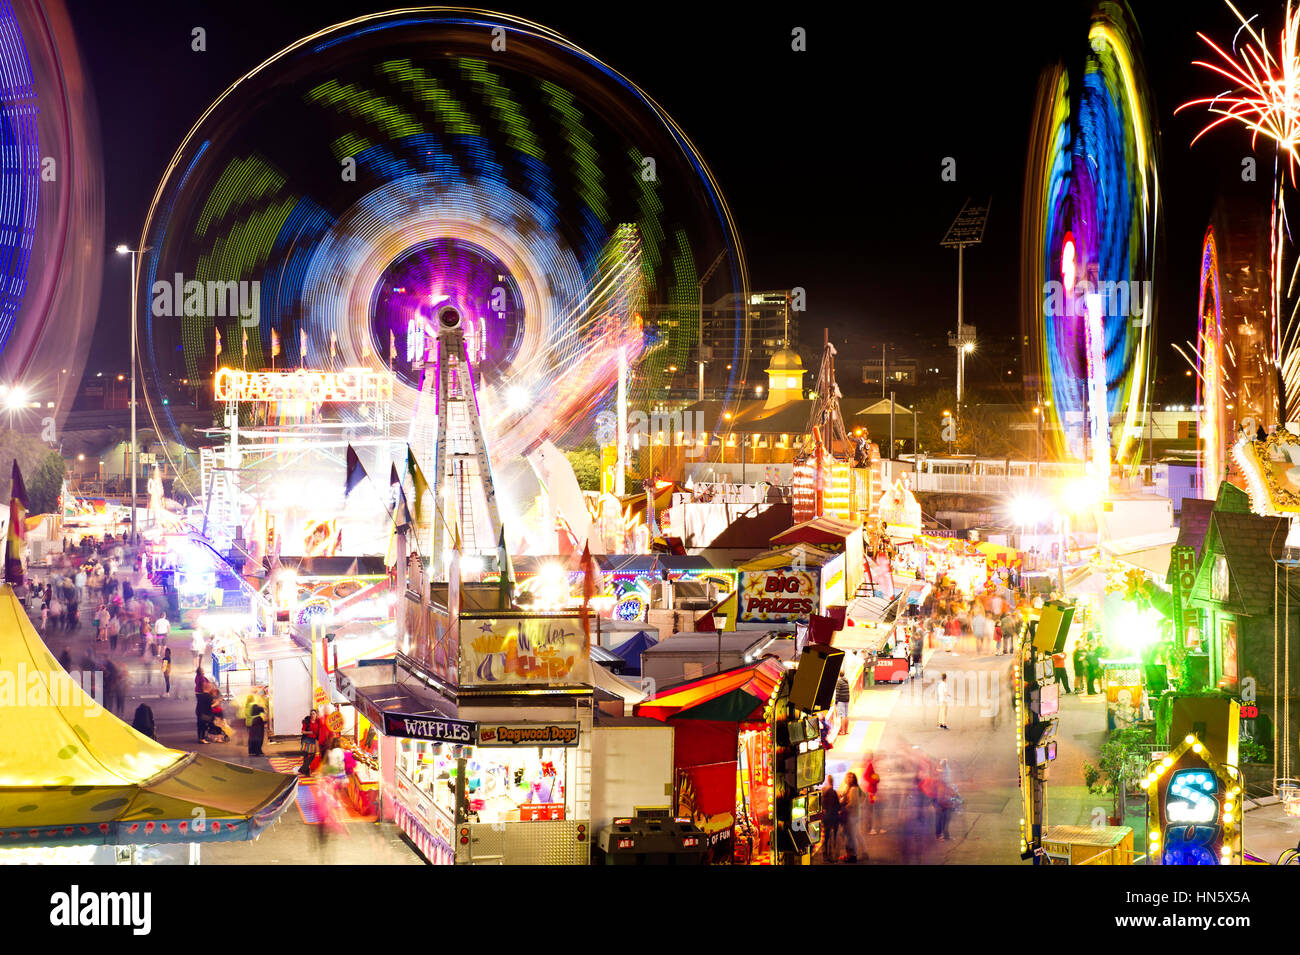 Recinto ferial carnavales durante la noche Foto de stock